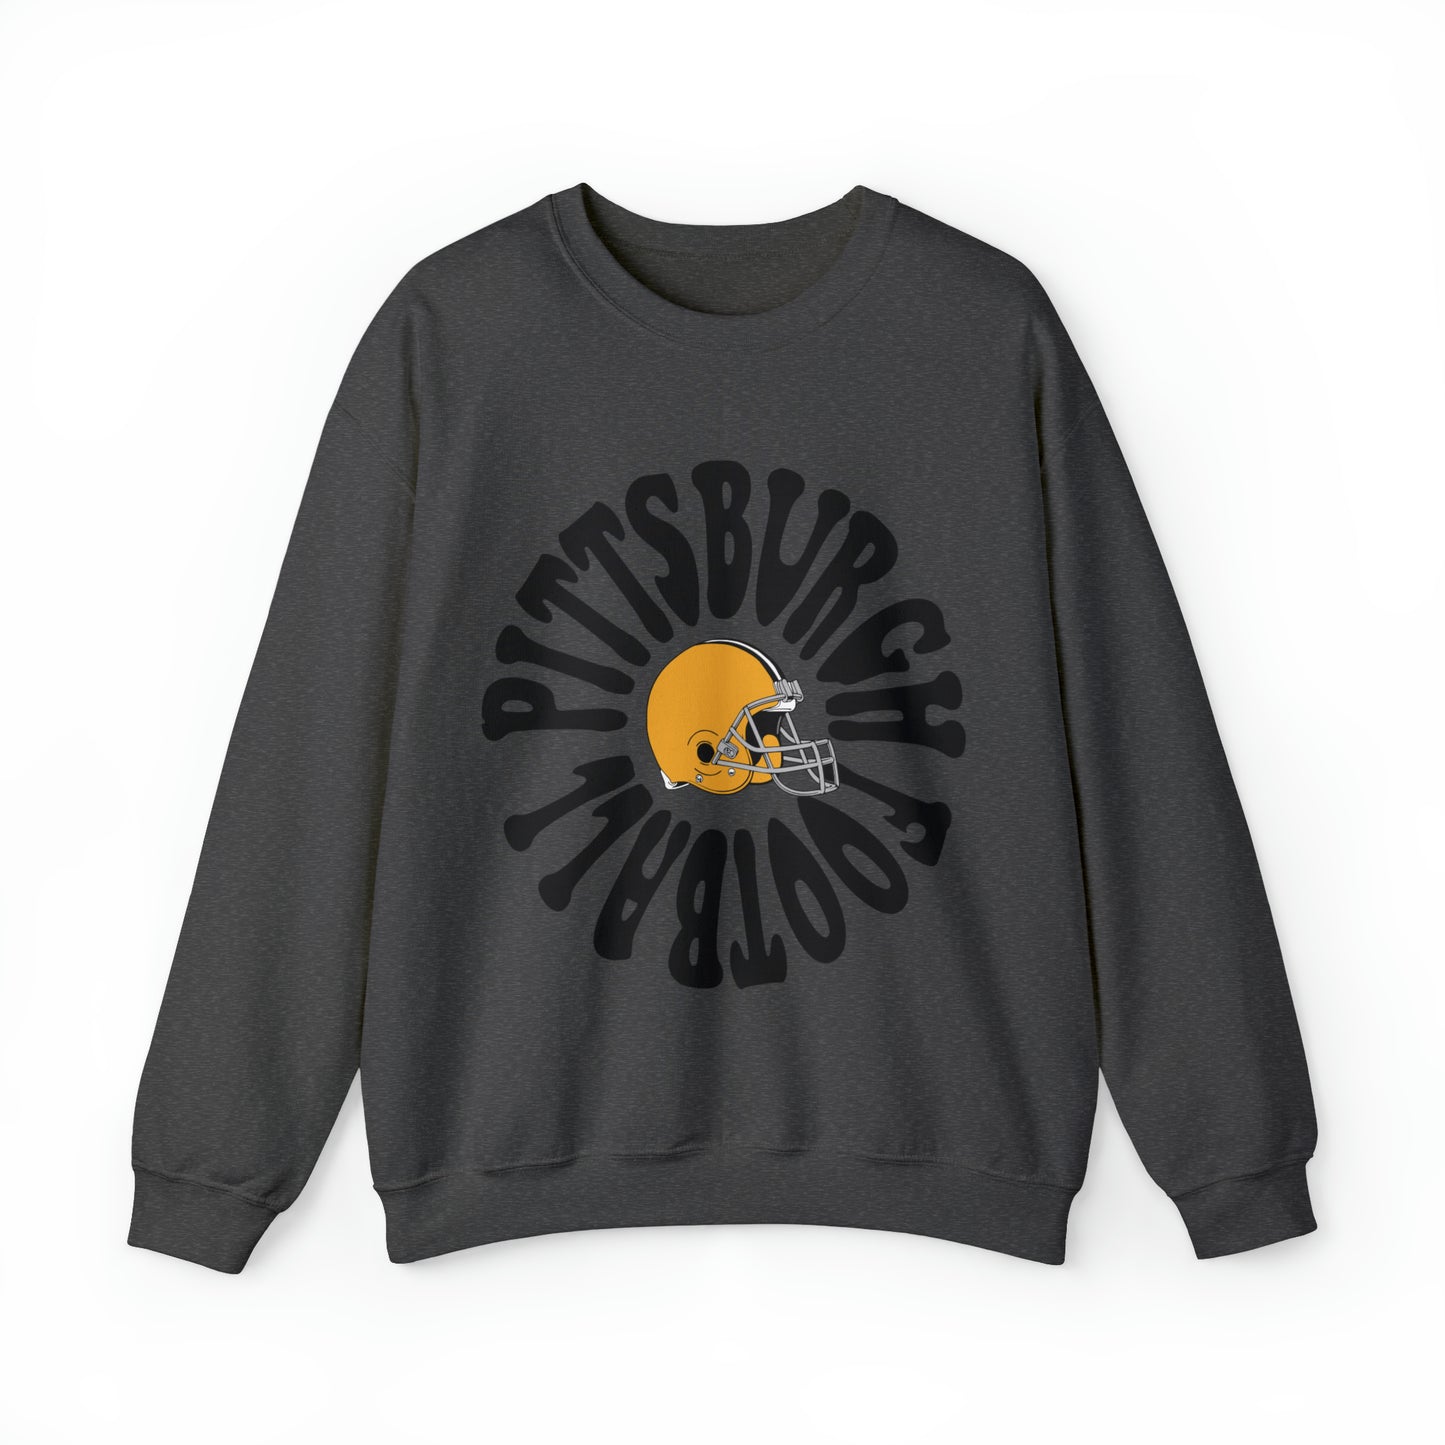 Retro Hippy Pittsburgh Steelers Football Crewneck - Vintage Football Sweatshirt